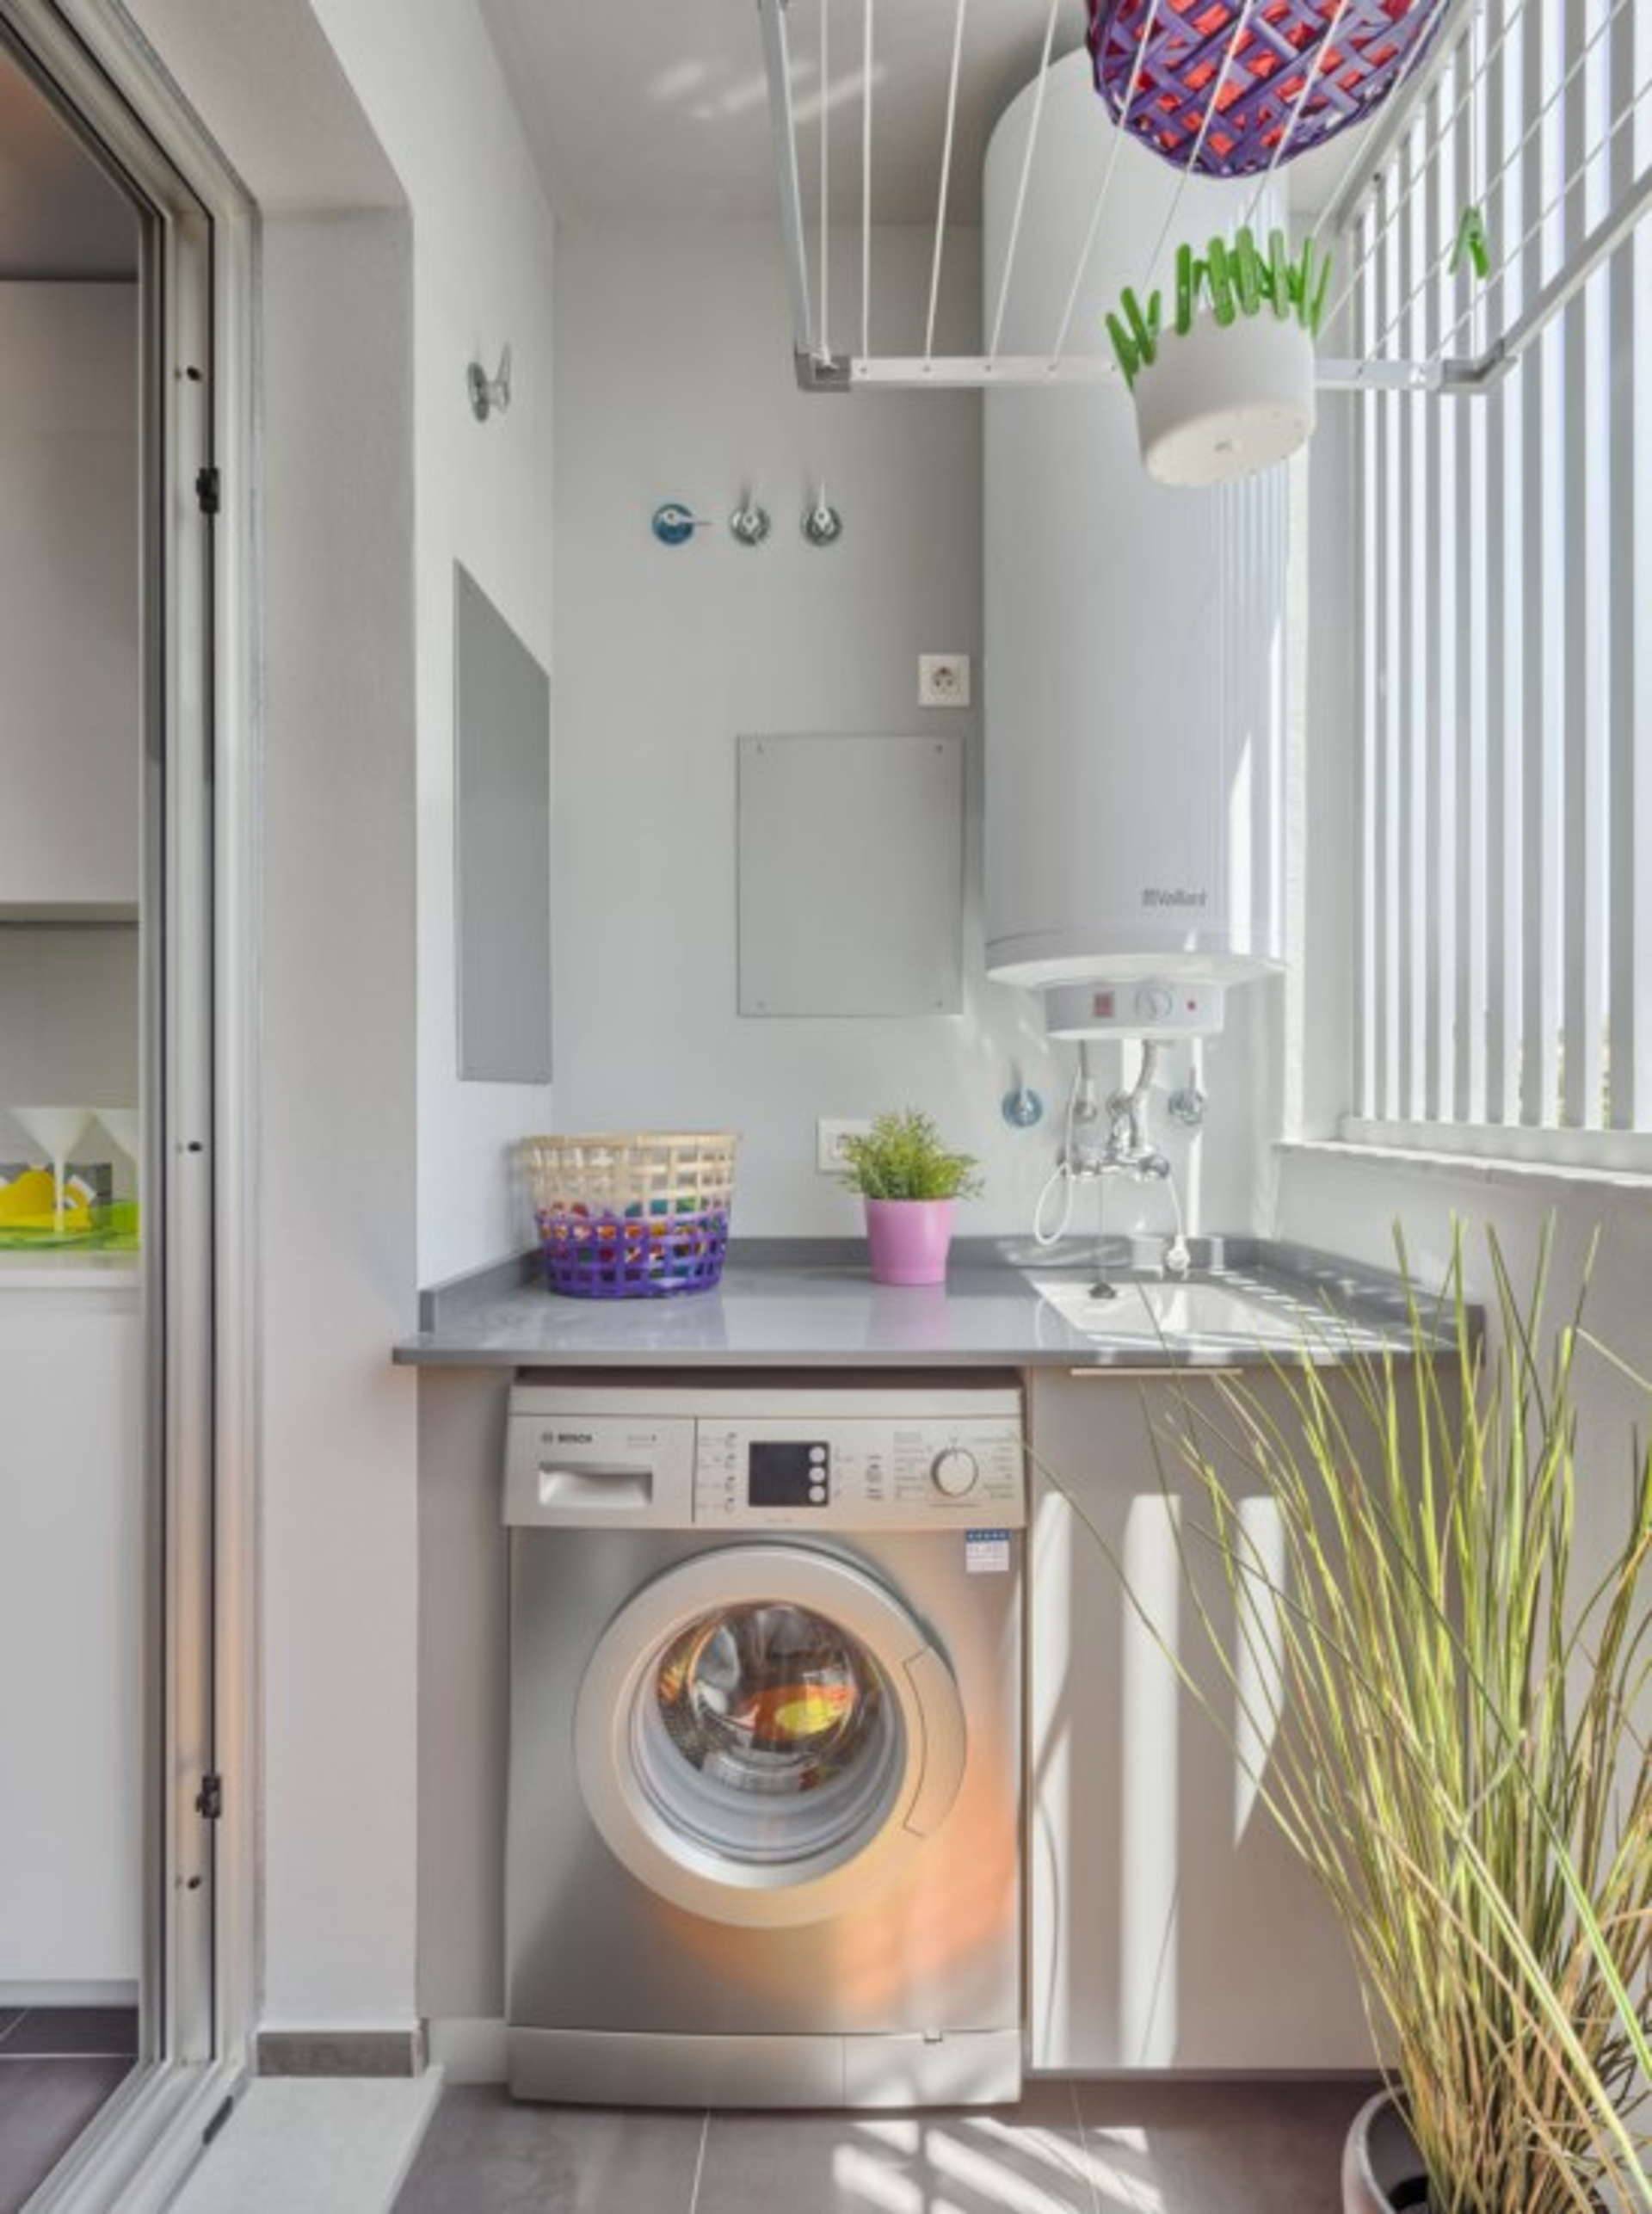 Những căn hộ chung cư hiện đại đều trang bị máy giặt ban công để tiết kiệm không gian và cho phép bạn giặt quần áo một cách dễ dàng. Với các tính năng thông minh và tiết kiệm năng lượng, máy giặt ban công chung cư giúp bạn tiết kiệm thời gian và chi phí trong việc giặt đồ. Hãy xem hình ảnh để khám phá thế giới của máy giặt ban công chung cư.